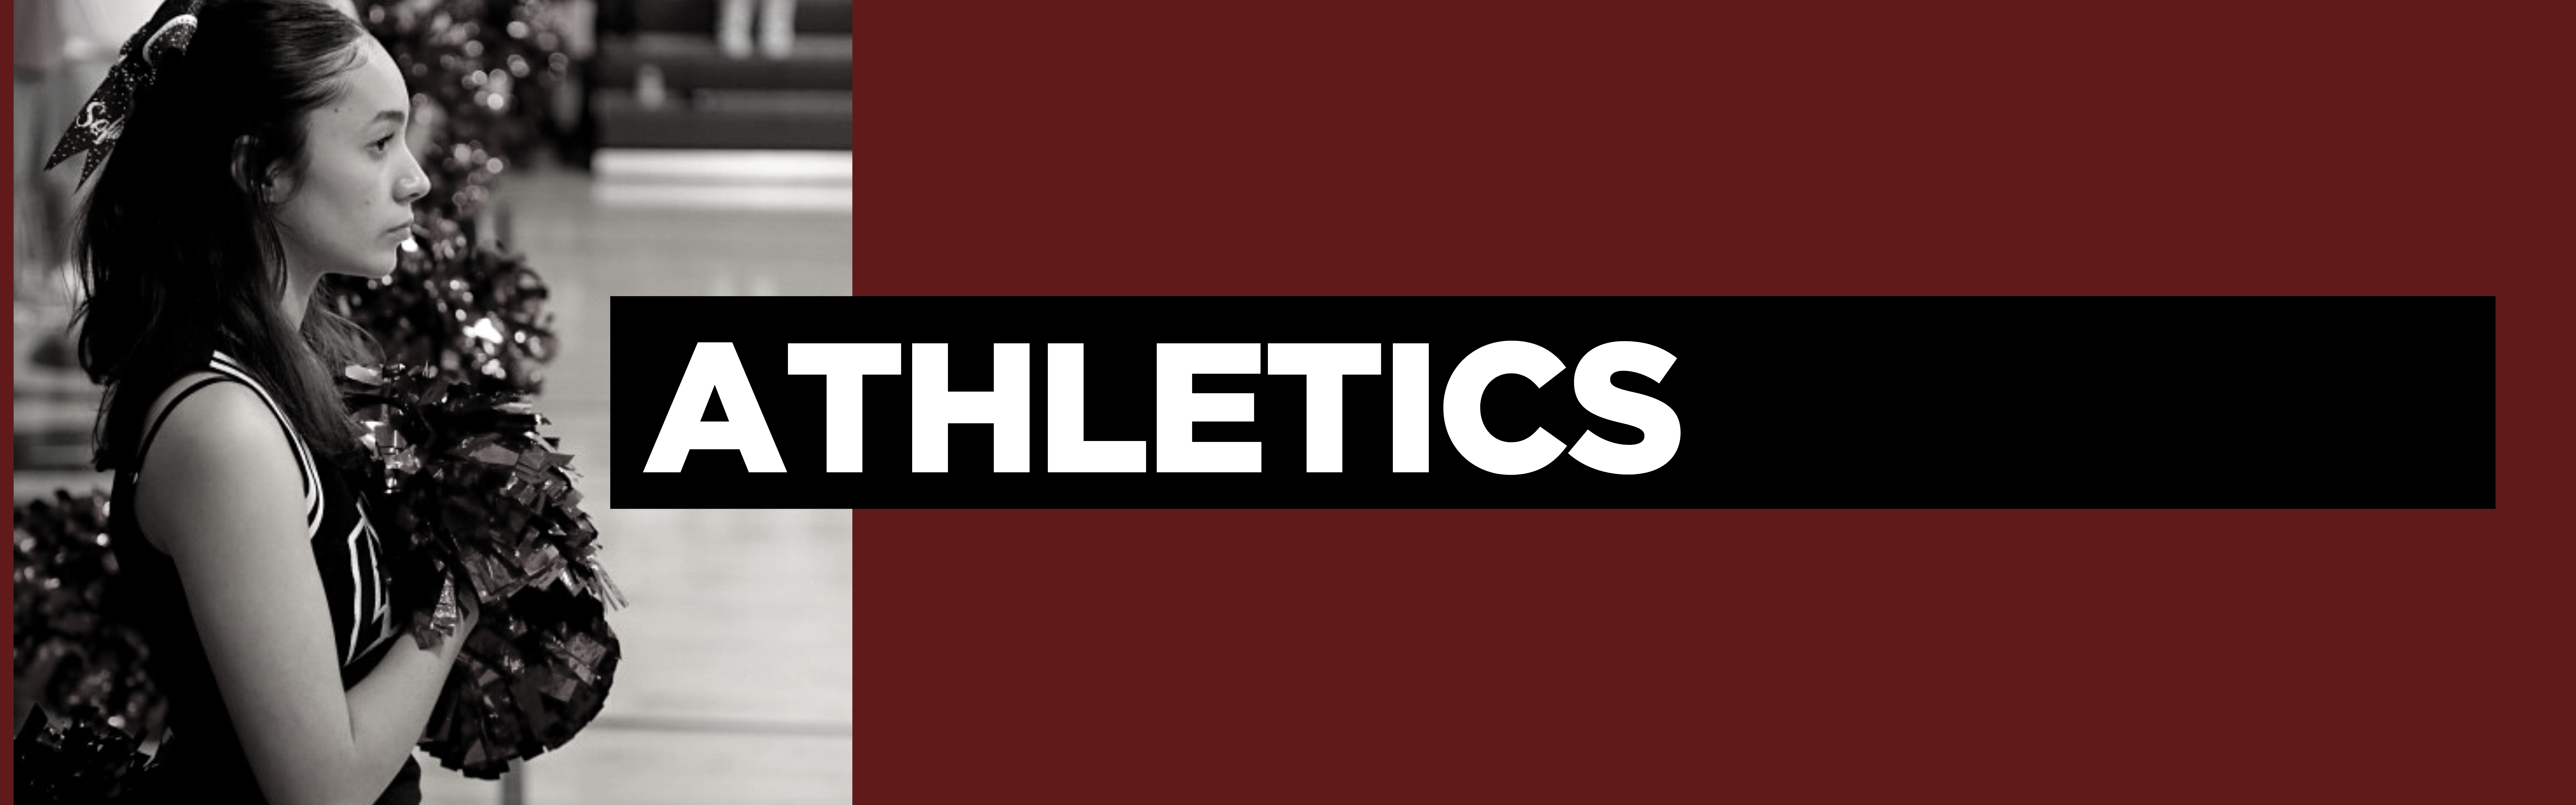 Faith Christian Academy, FL- Athletics Web Banner